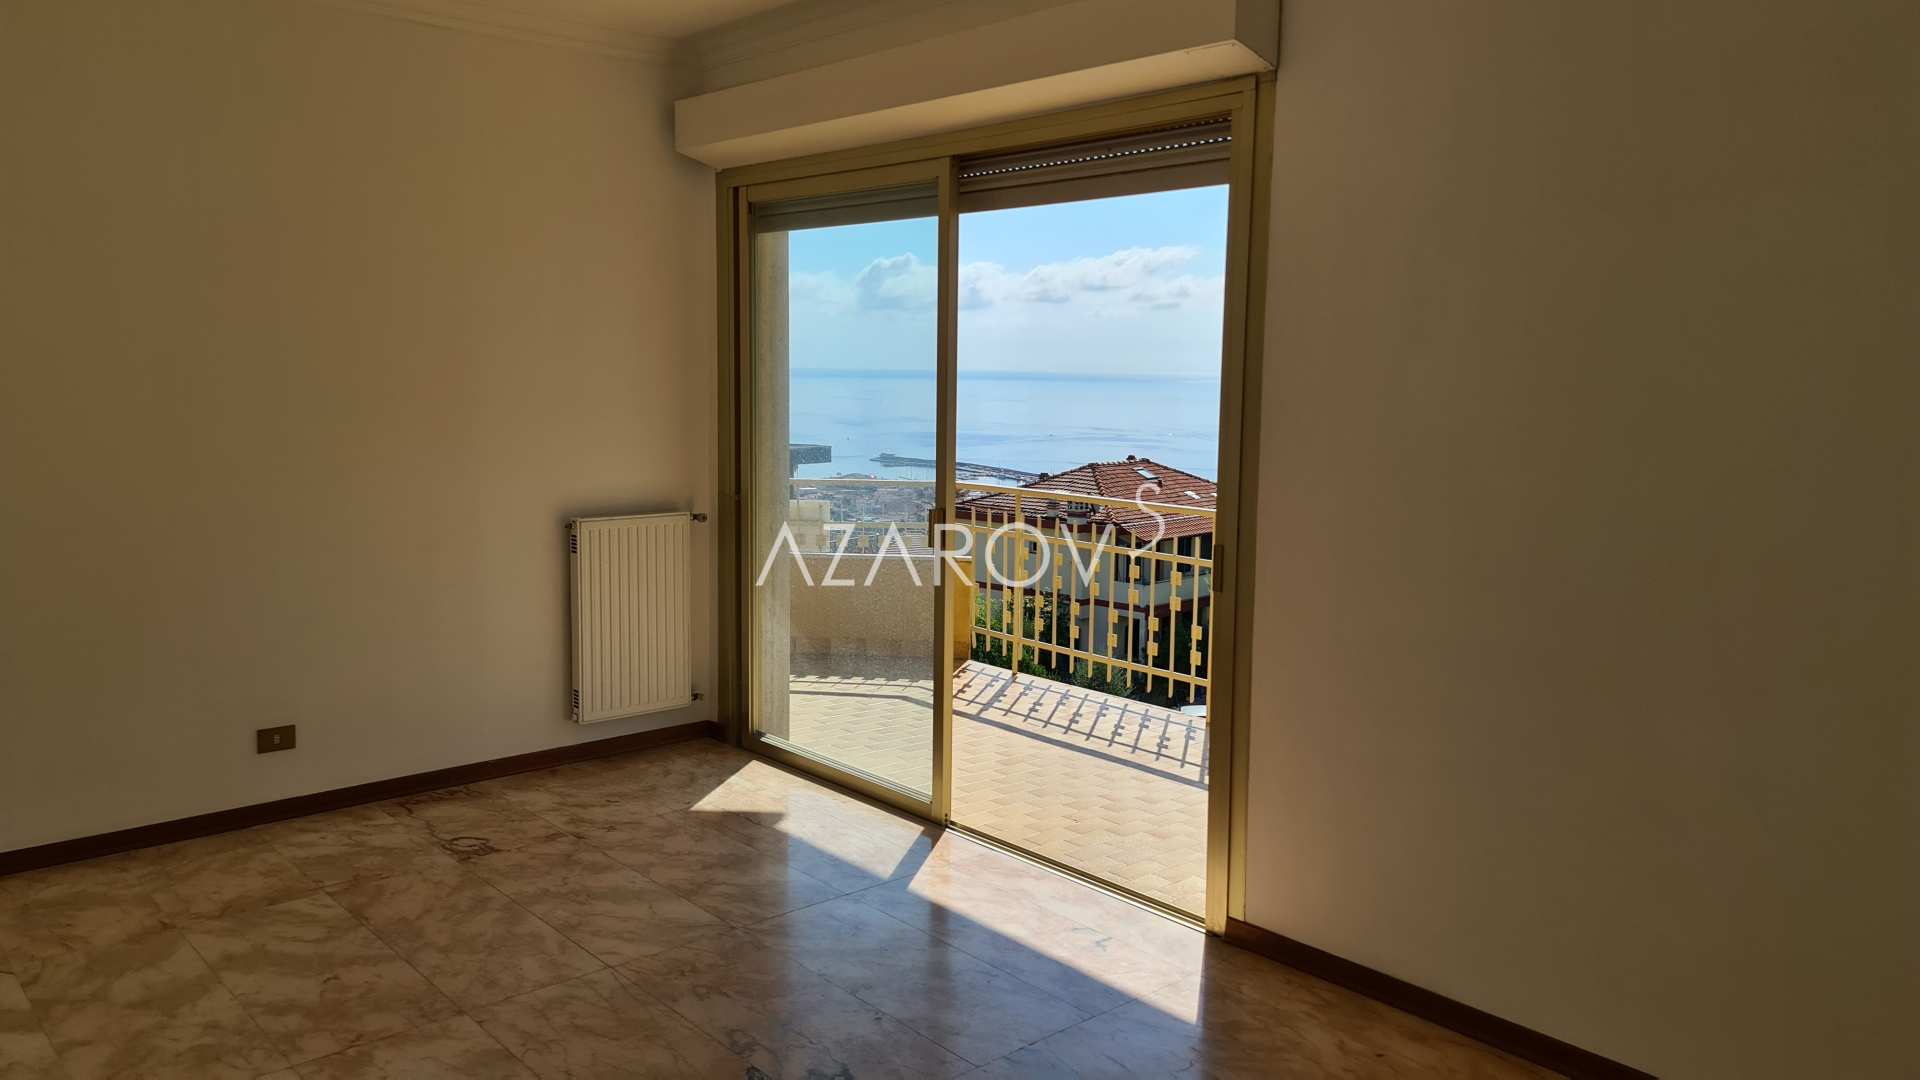 Appartamento a Sanremo con vista mare